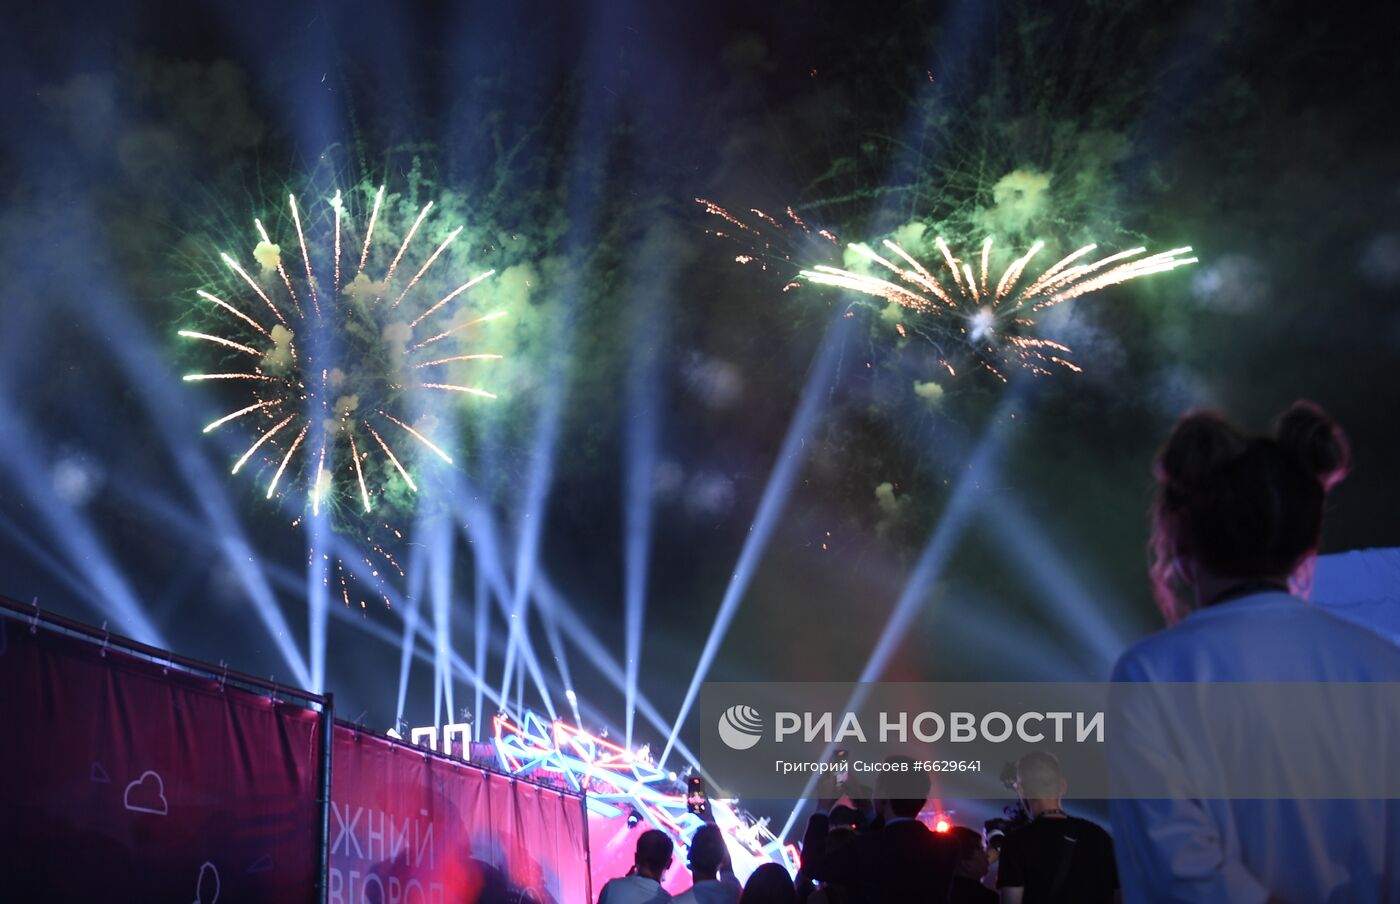 Празднование 800-летия Нижнего Новгорода